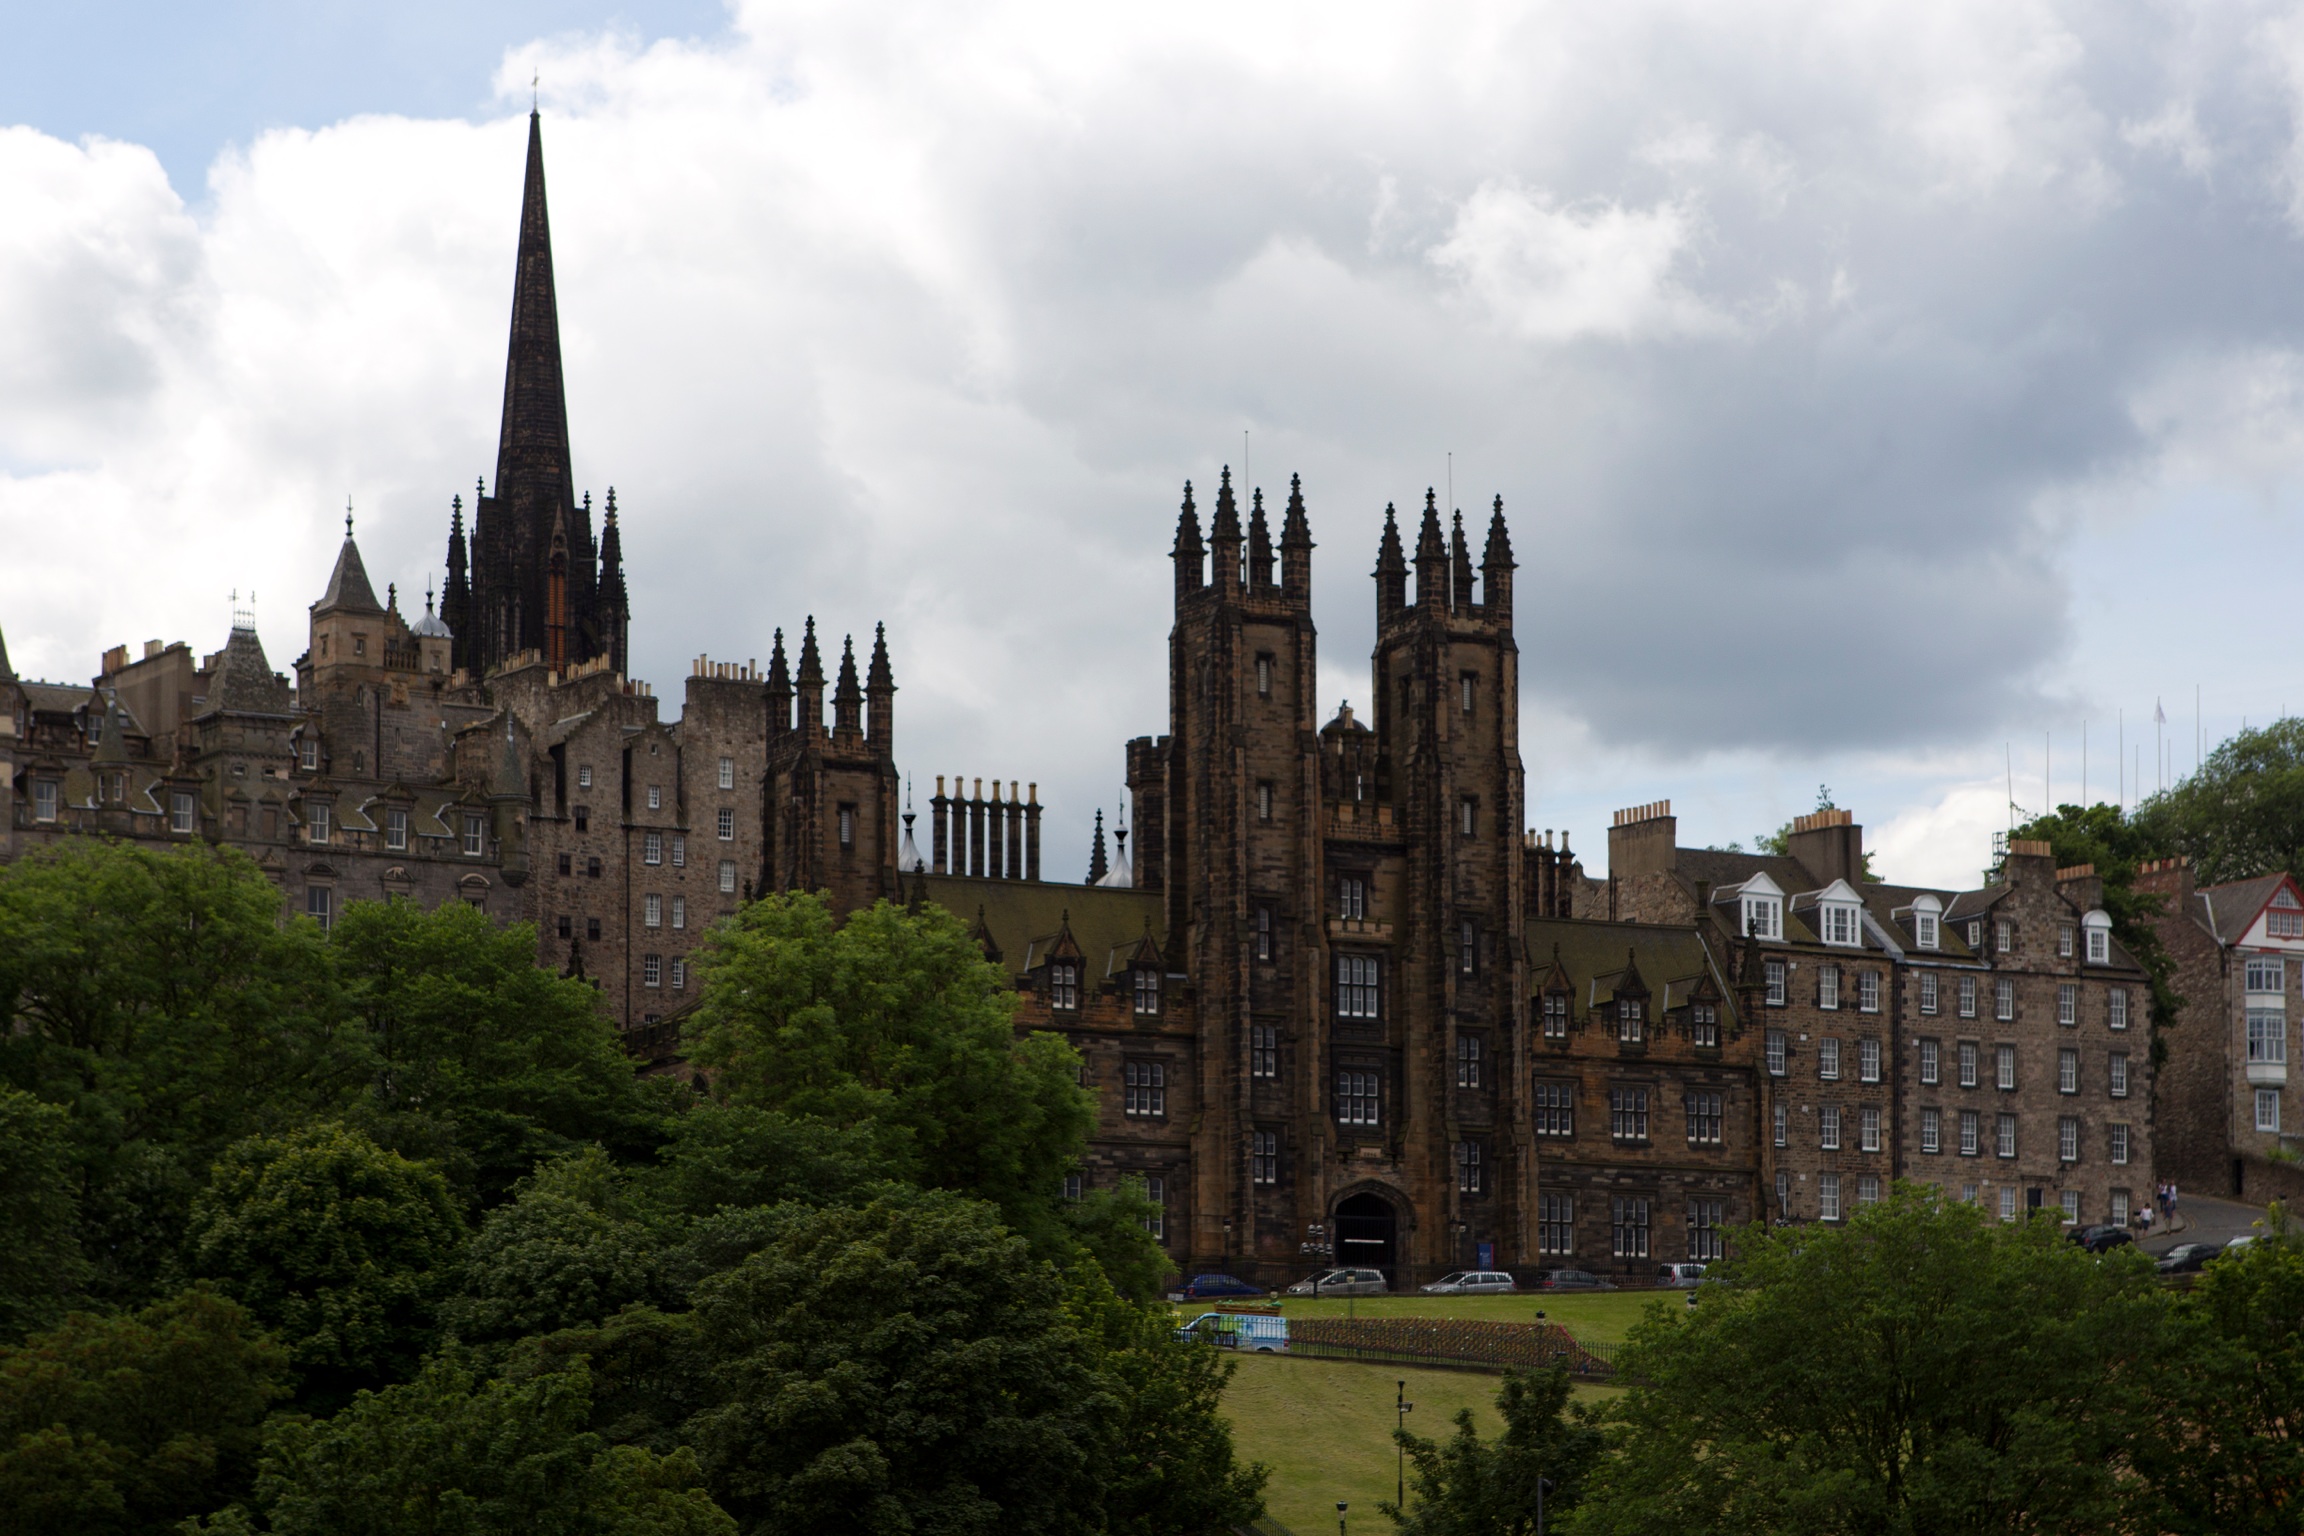 The University of Edinburgh taken on 22 June 2014.